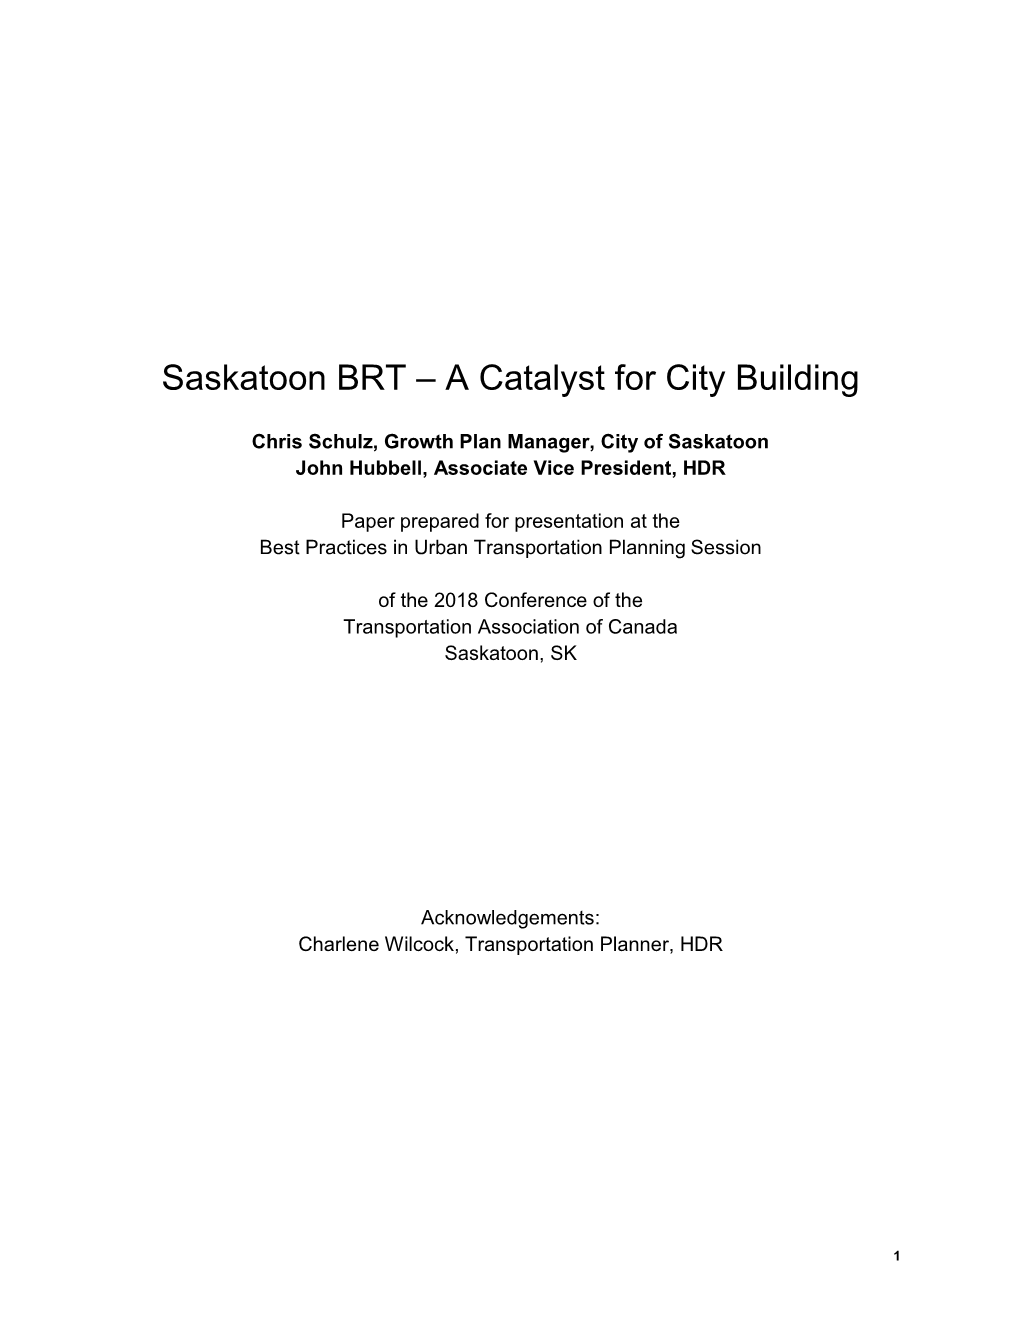 Saskatoon BRT – a Catalyst for City Building